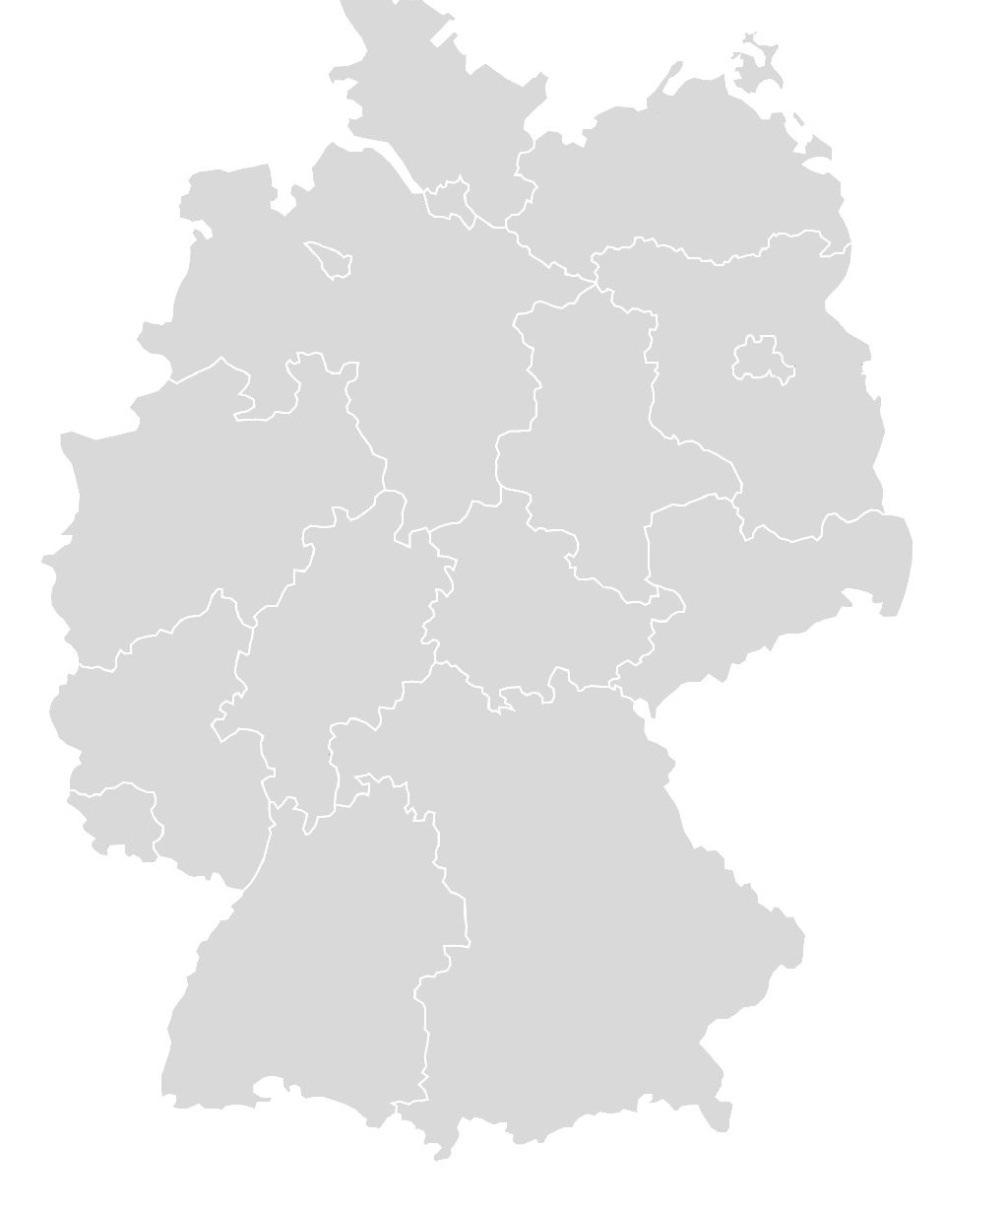 Zusagen nach Bundesländern Saarland Nordrhein- Westfalen 16,1% 0,6% 10,6% Bremen 1,2% 2,5% Niedersachsen Hessen Thüringen 5,6% 6,8% 3,7% Baden- Württemberg Bayern Rheinland- Pfalz Mecklenburg-